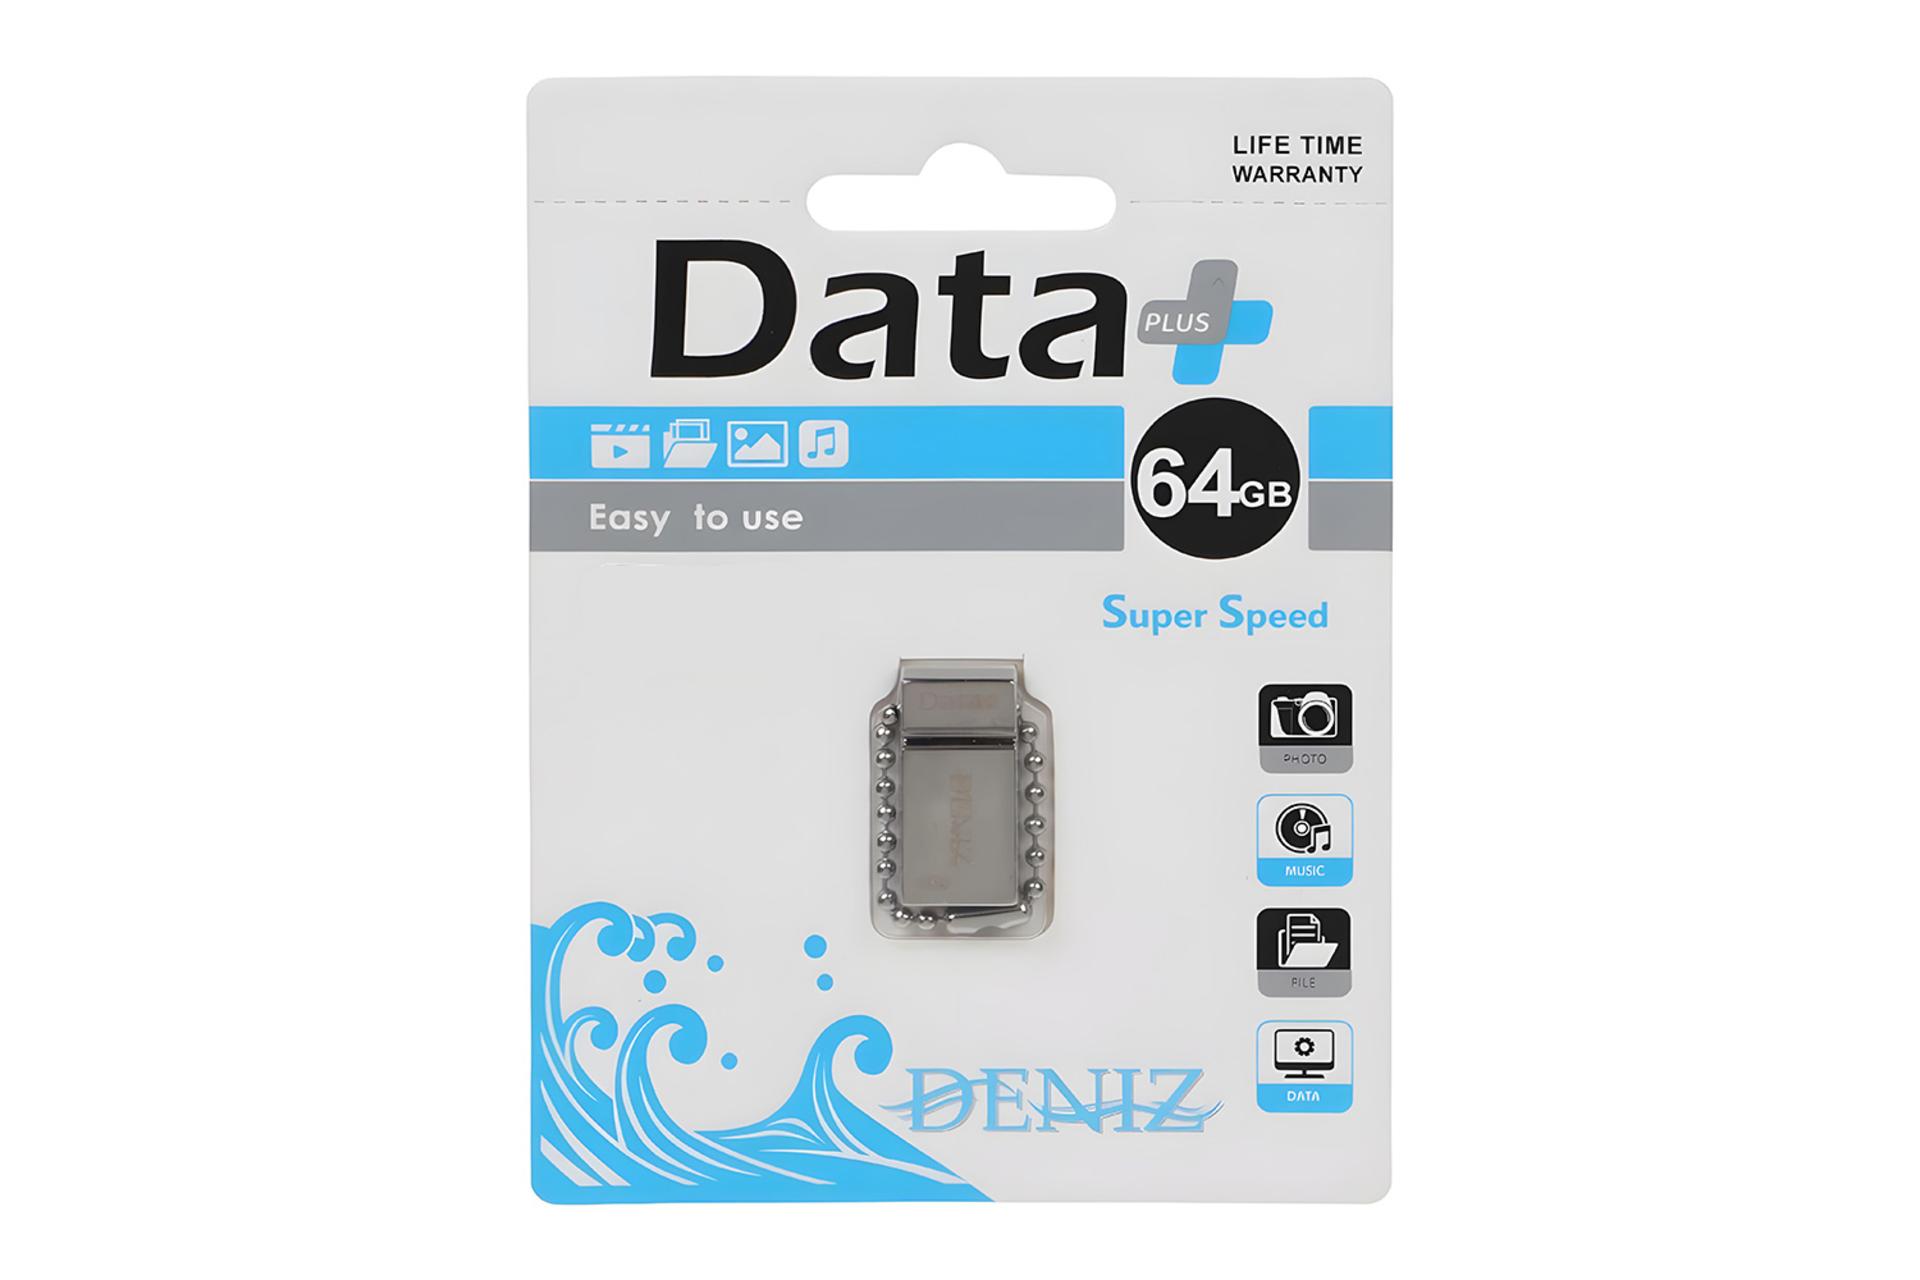 جعبه فلش مموری دیتاپلاس Data+ DENIZ 64GB USB 2.0